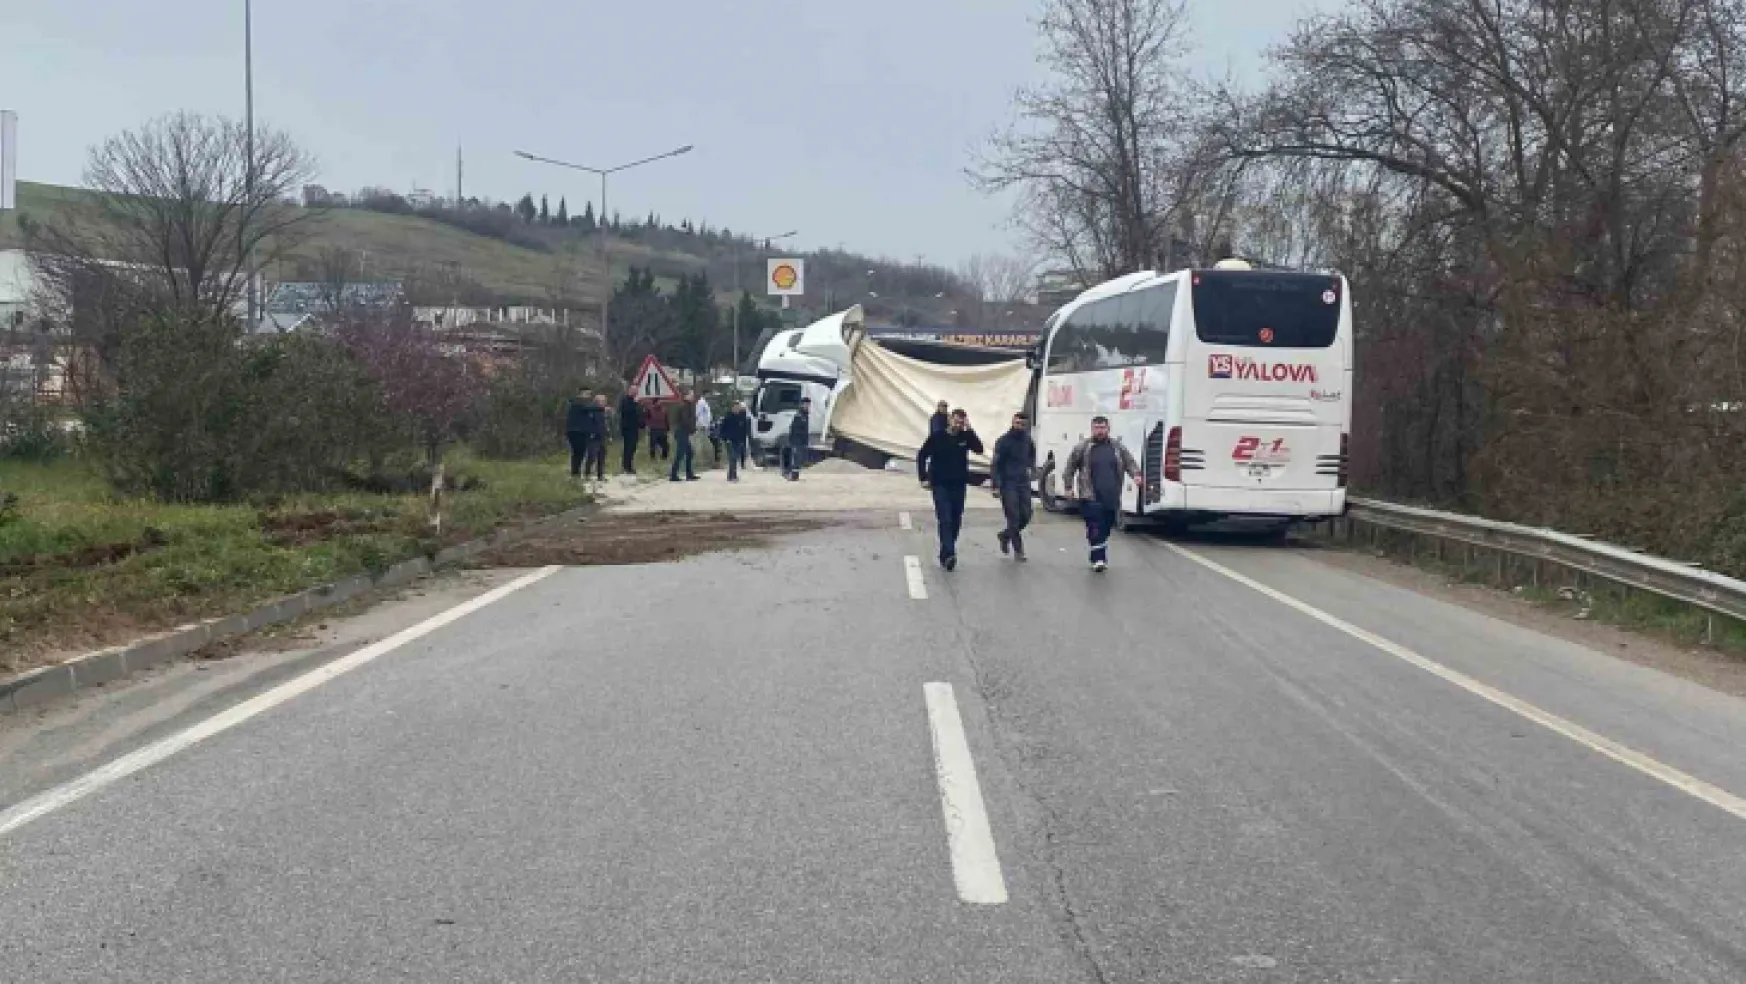 Yalova'da devrilen mıcır yüklü tıra otobüs çarptı